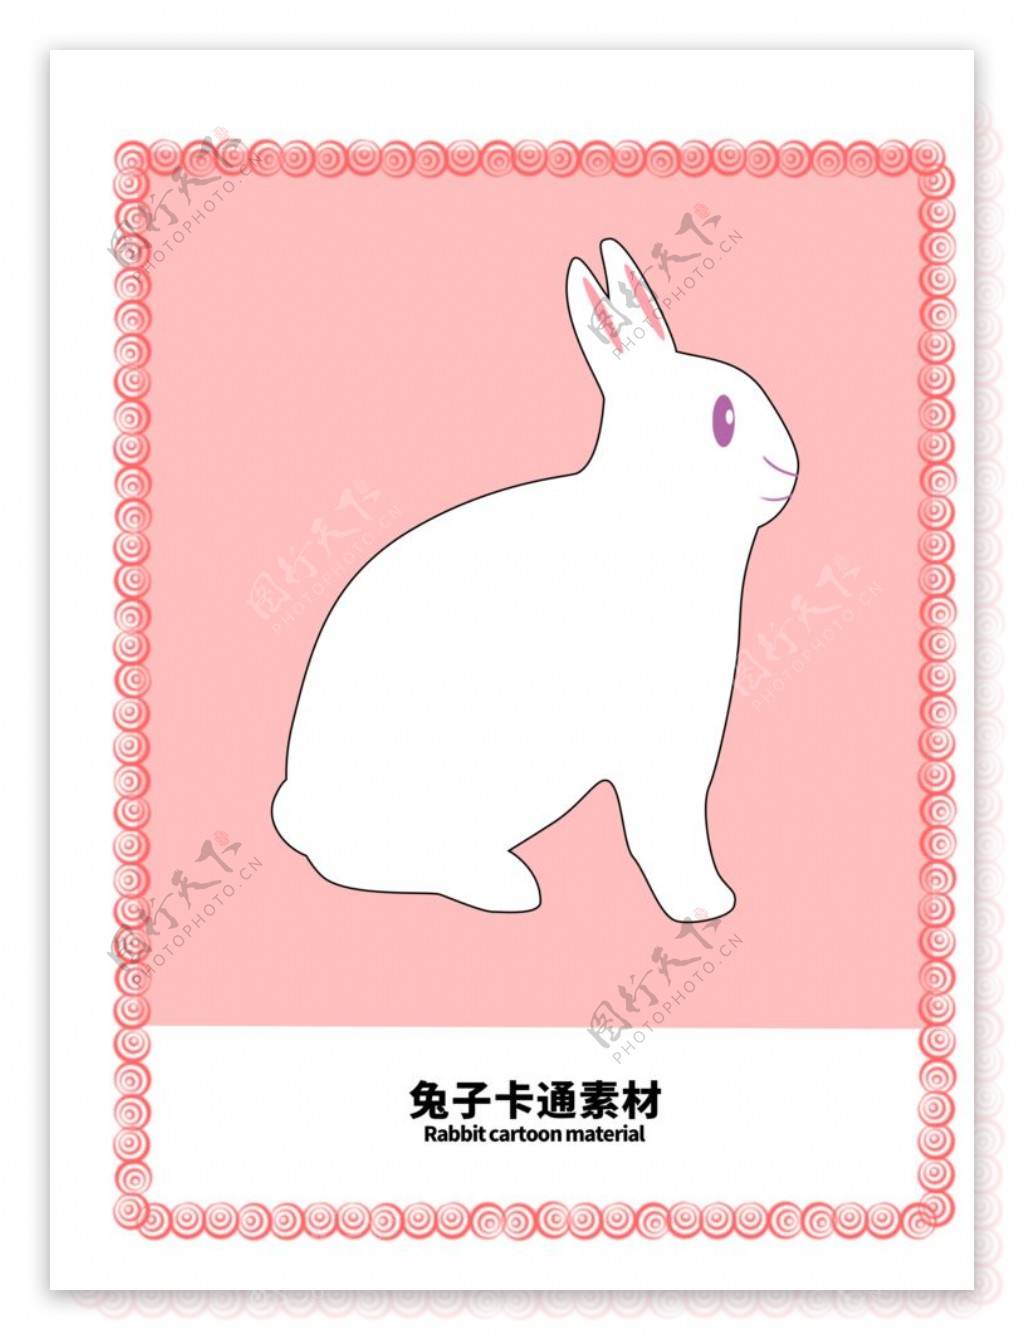 分层边框粉色分栏兔子卡通素材图片